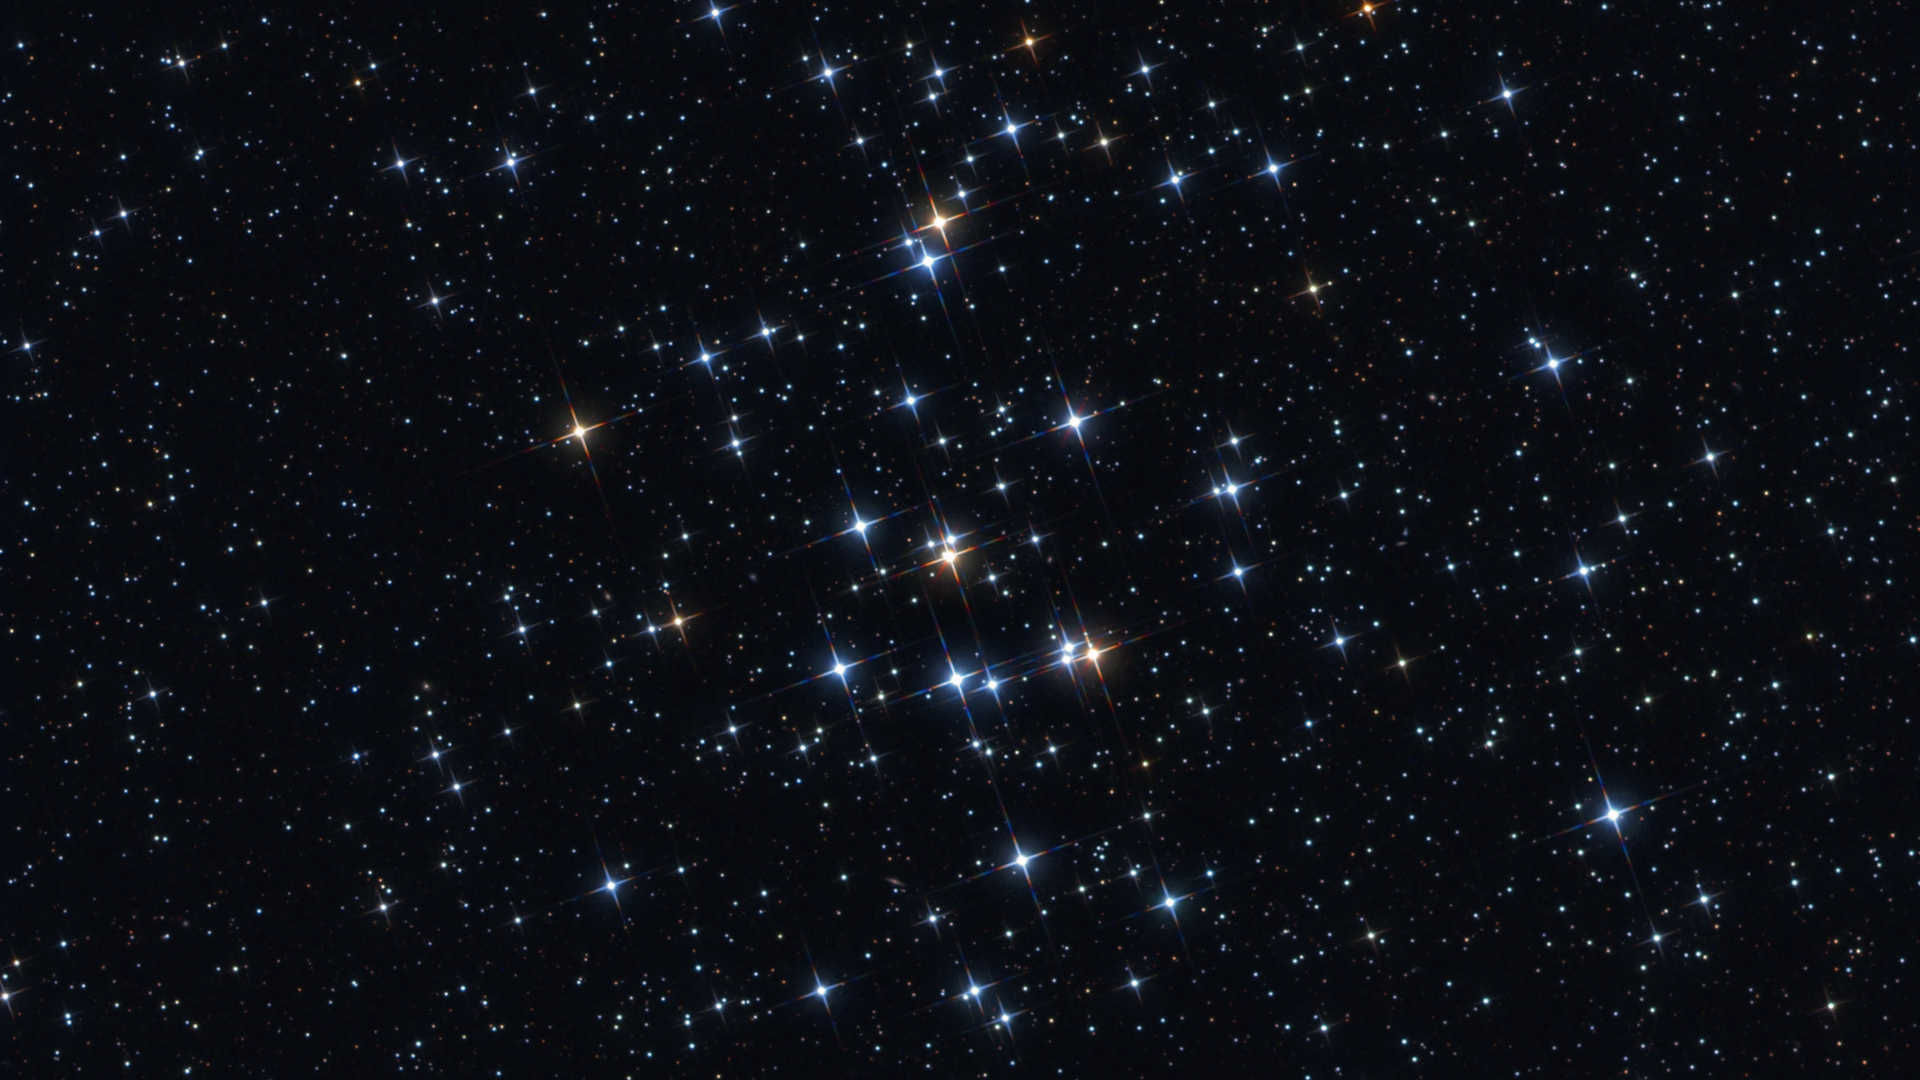 Gromada otwarta M44 jest perełką nieba wiosennego. Mario Weigand